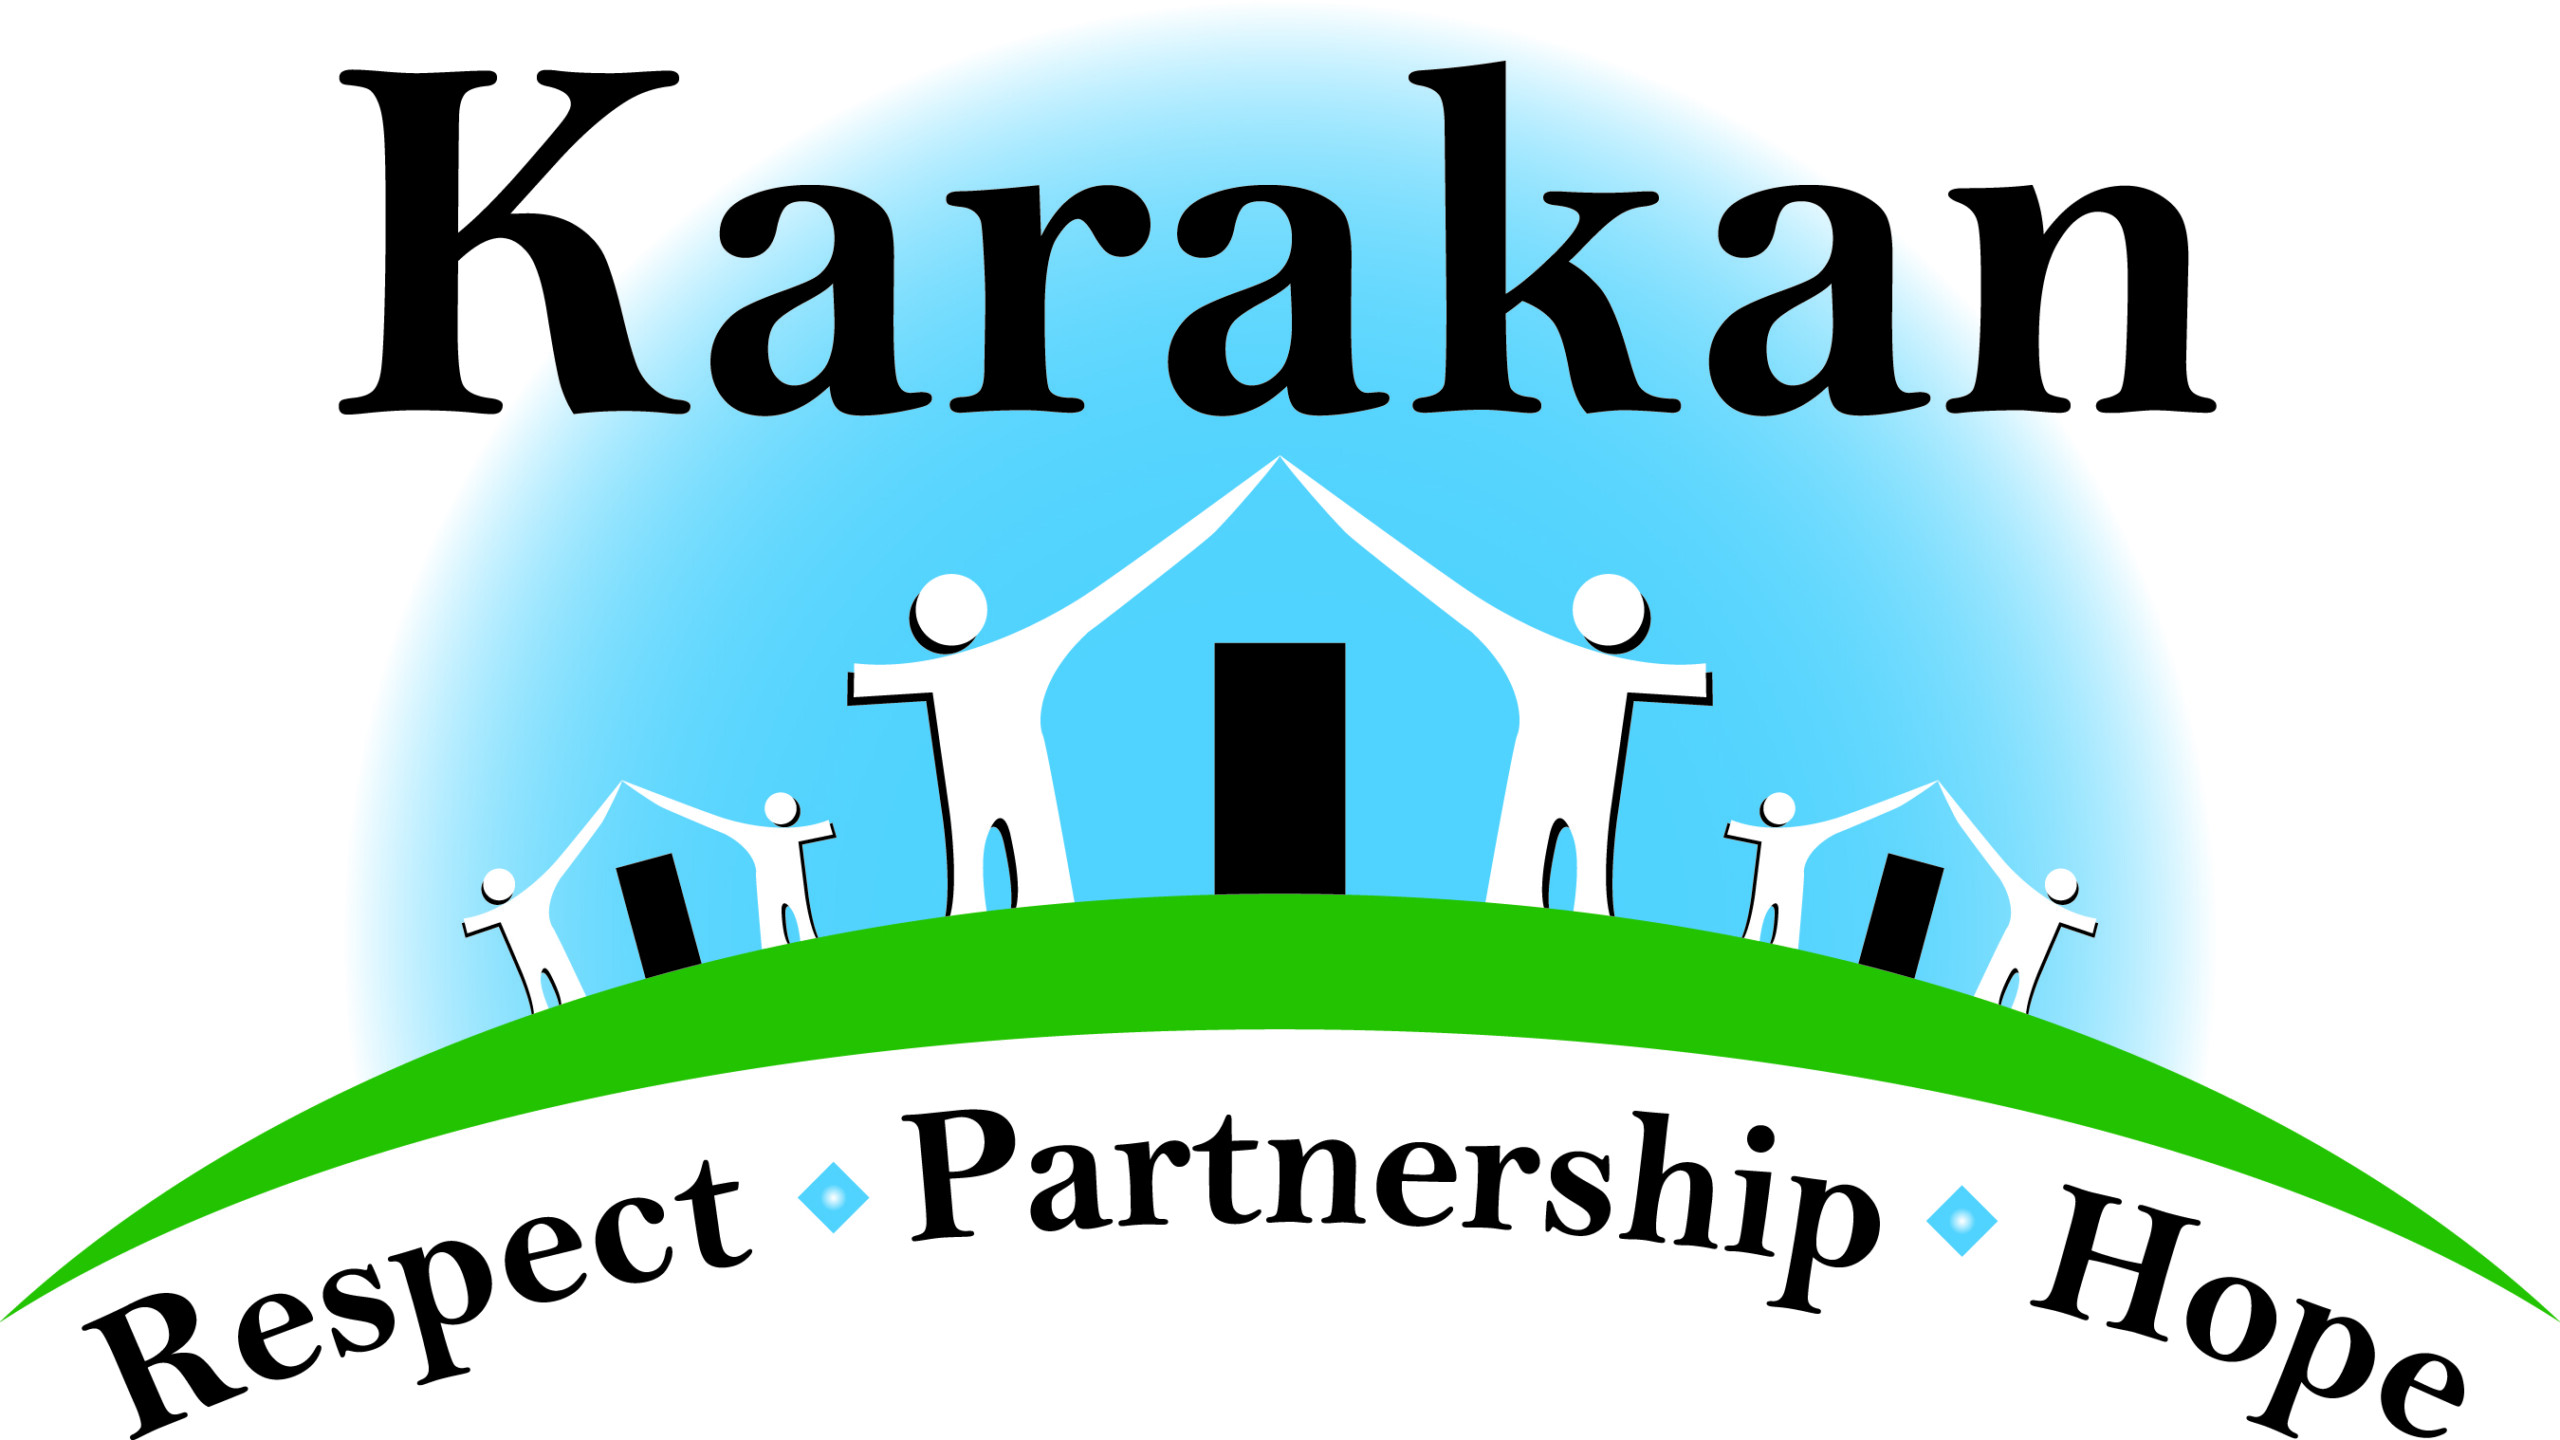 Karakan Ltd